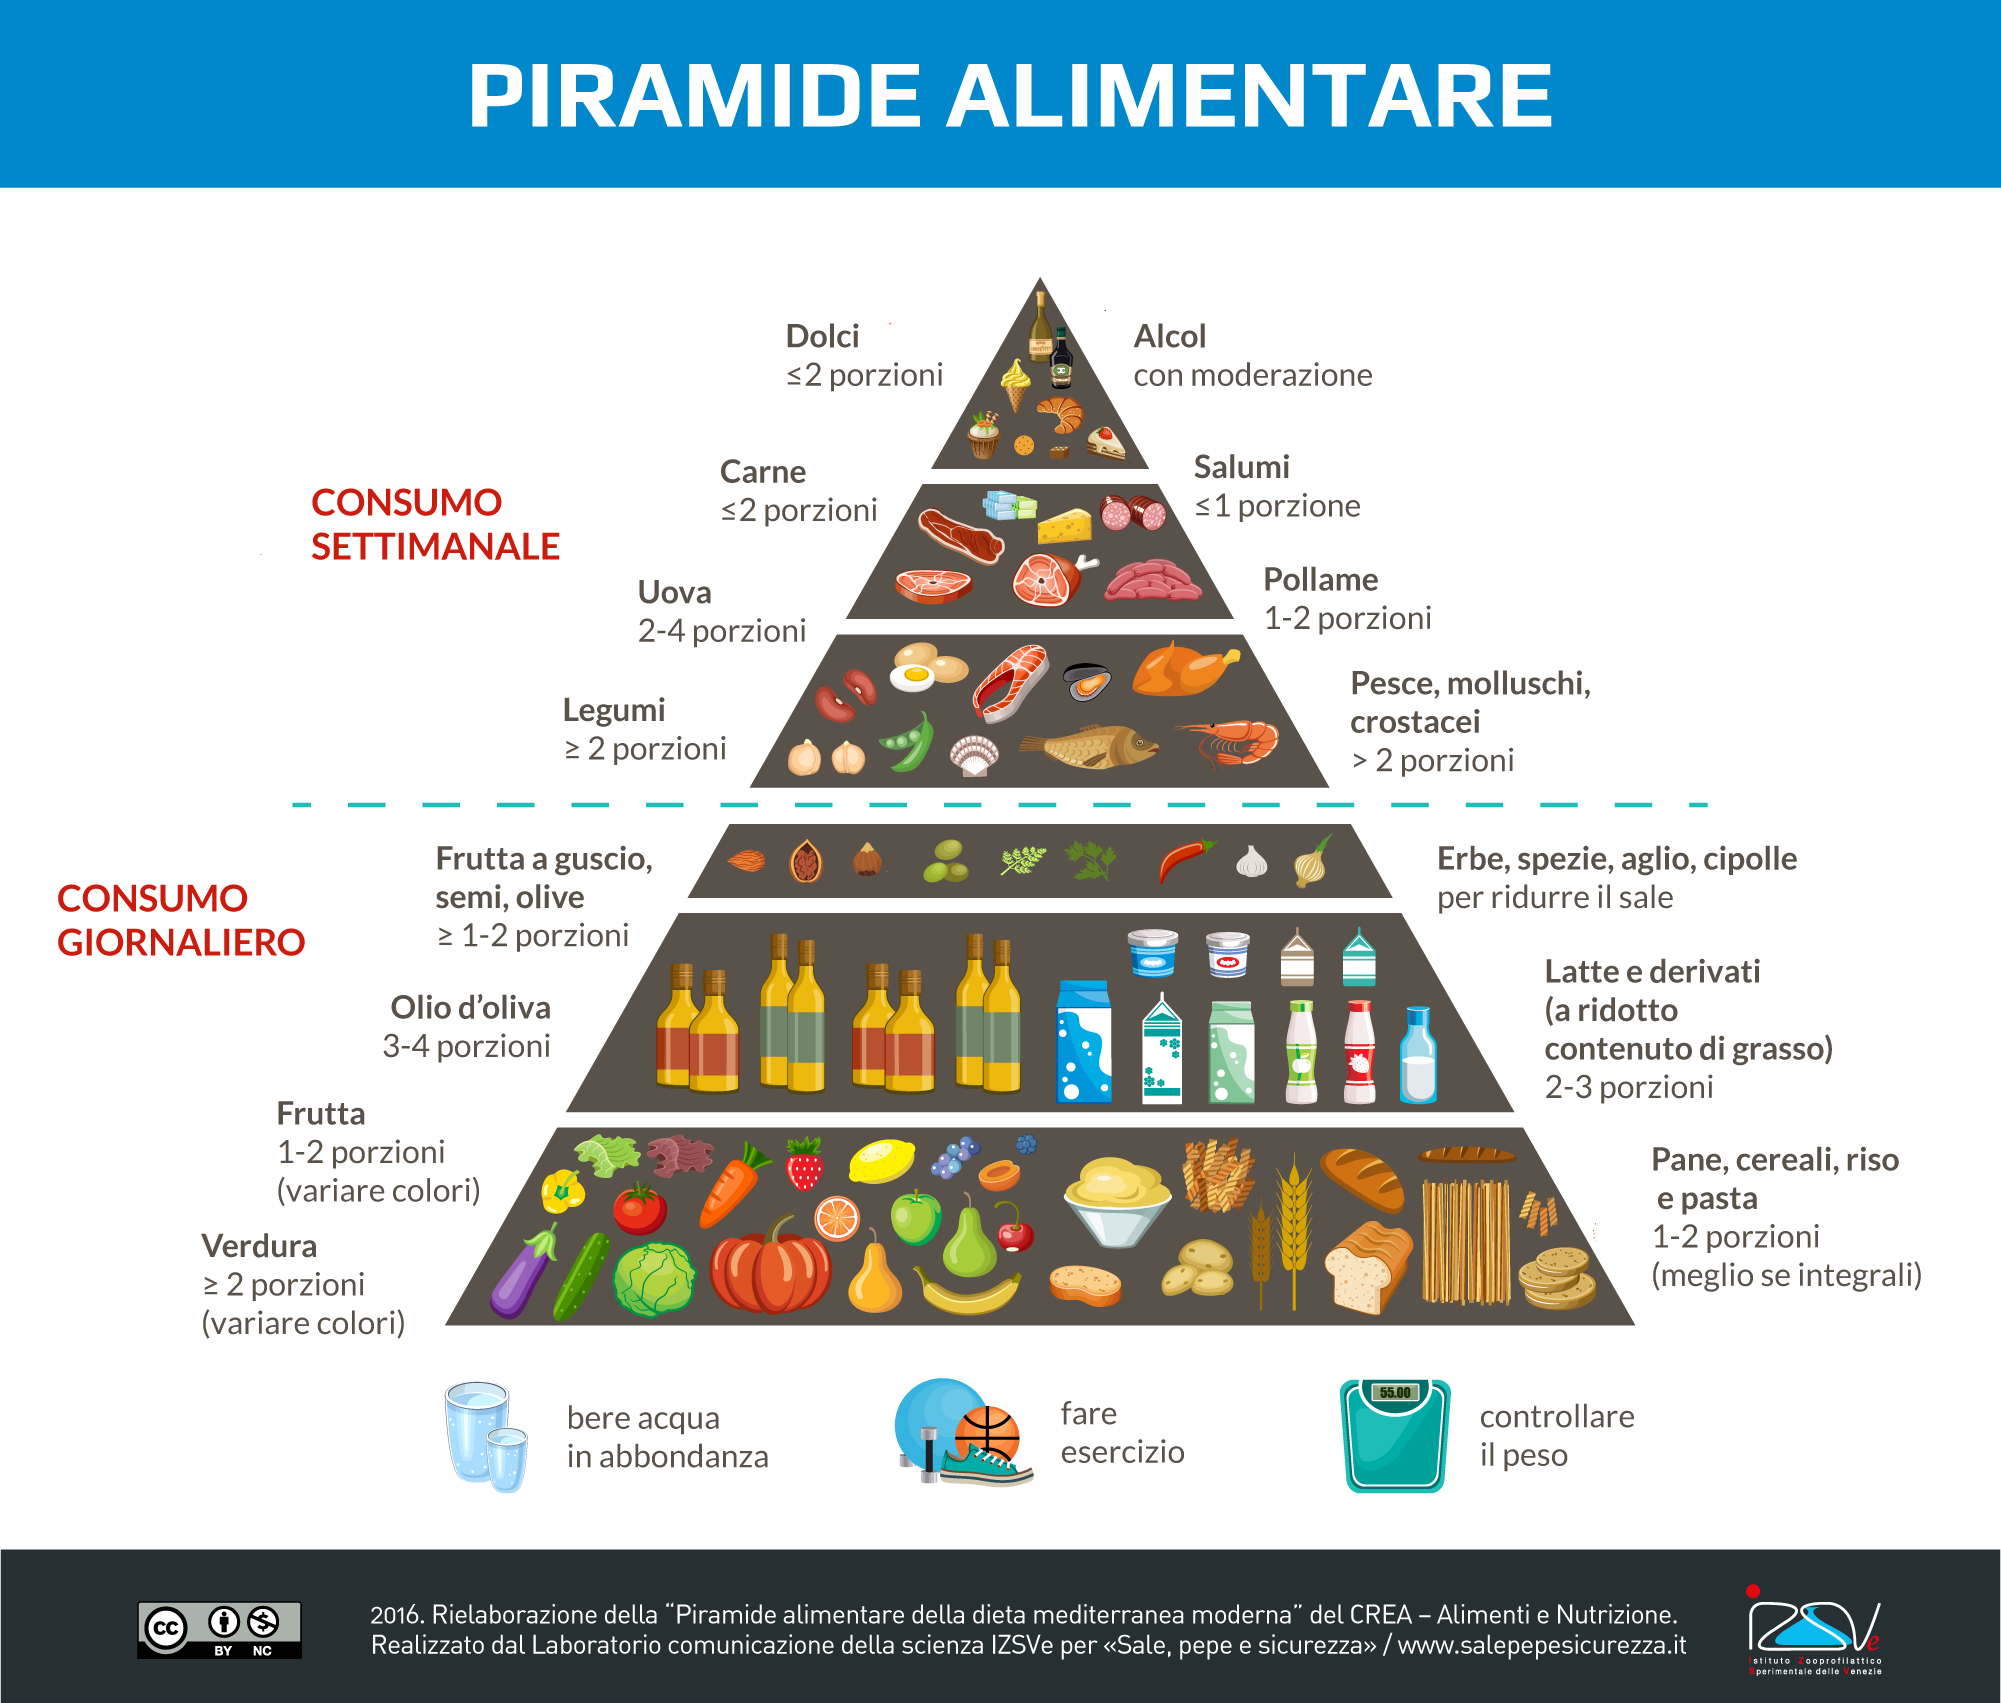 Piramide alimentare della dieta mediterranea moderna